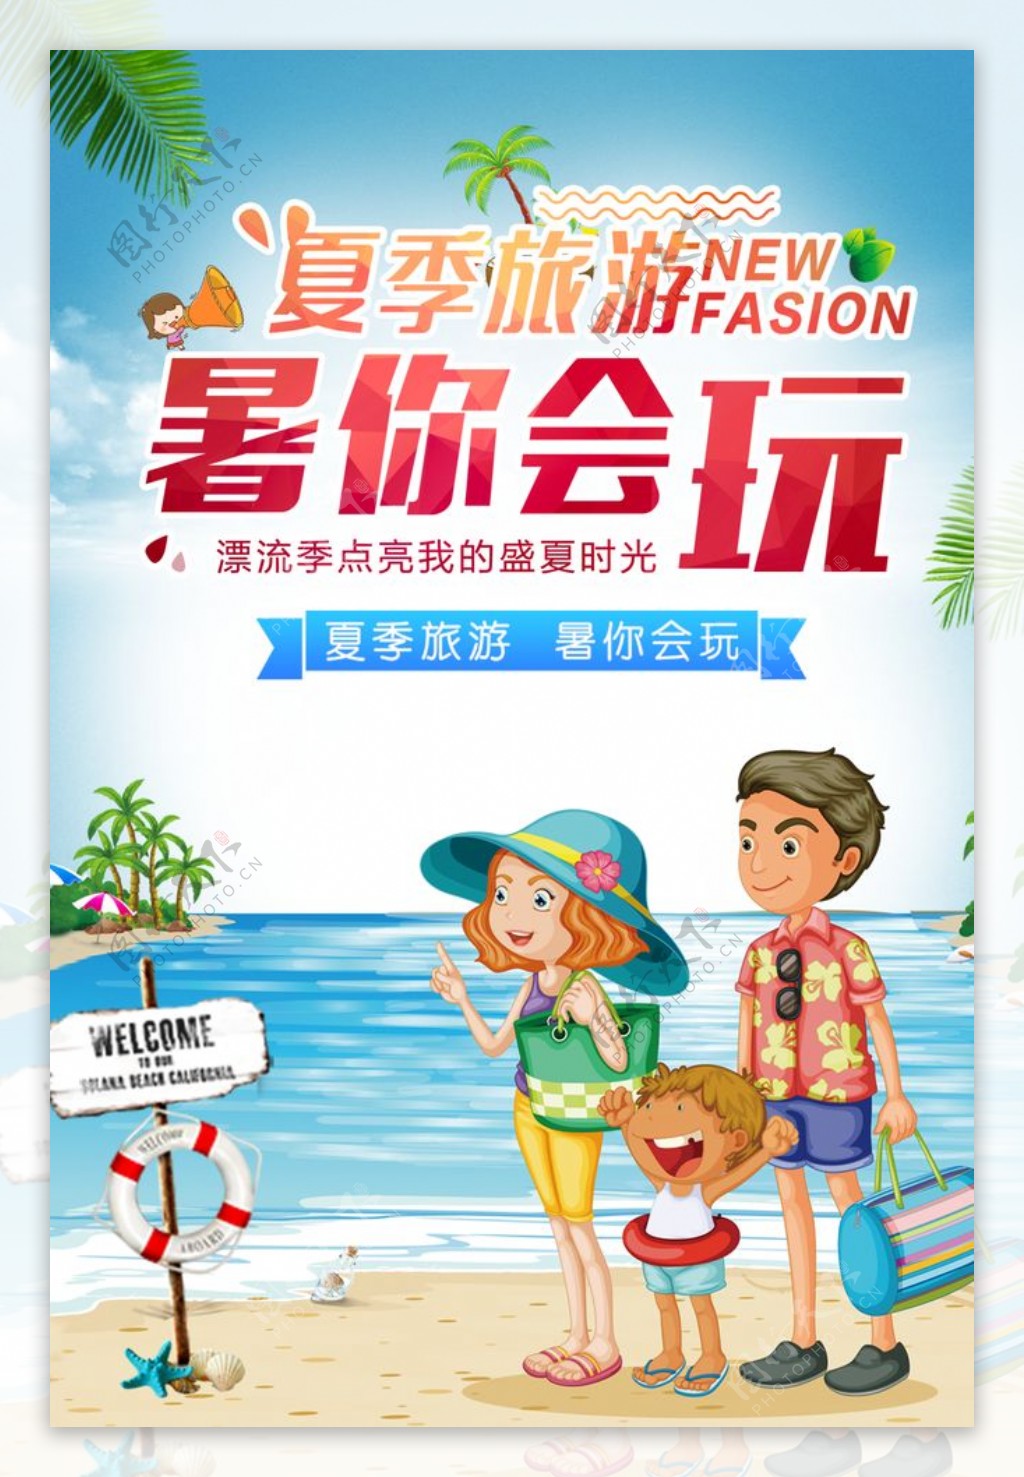 夏季旅行旅游活动宣传海报素材图片